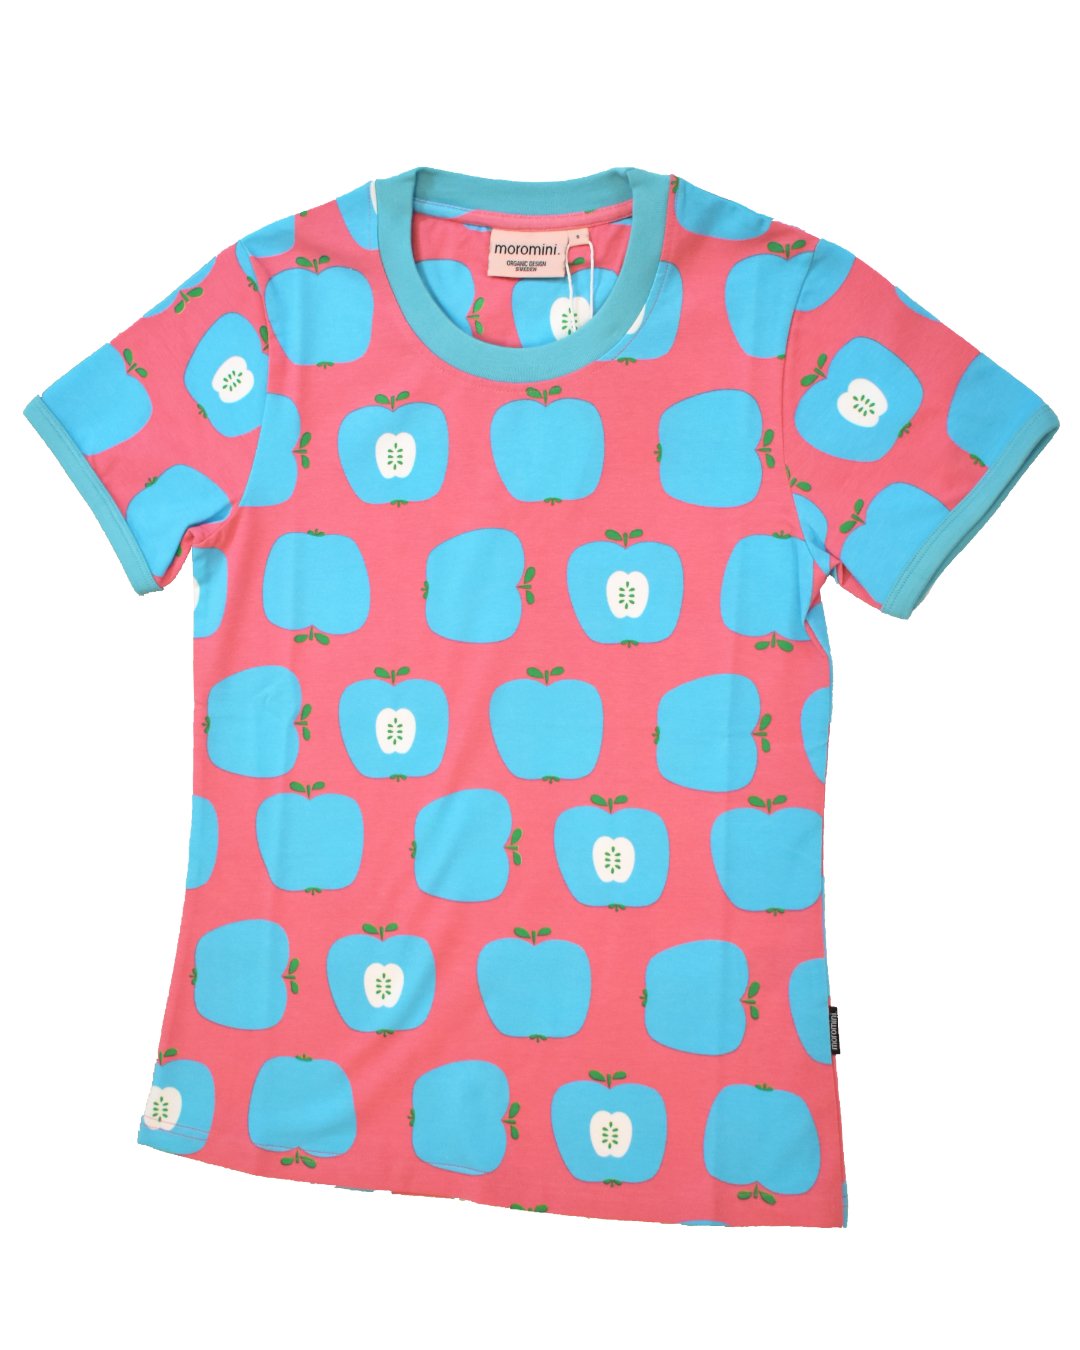 Damen T-Shirt in Pink mit hellblauen Äpfeln von moromini